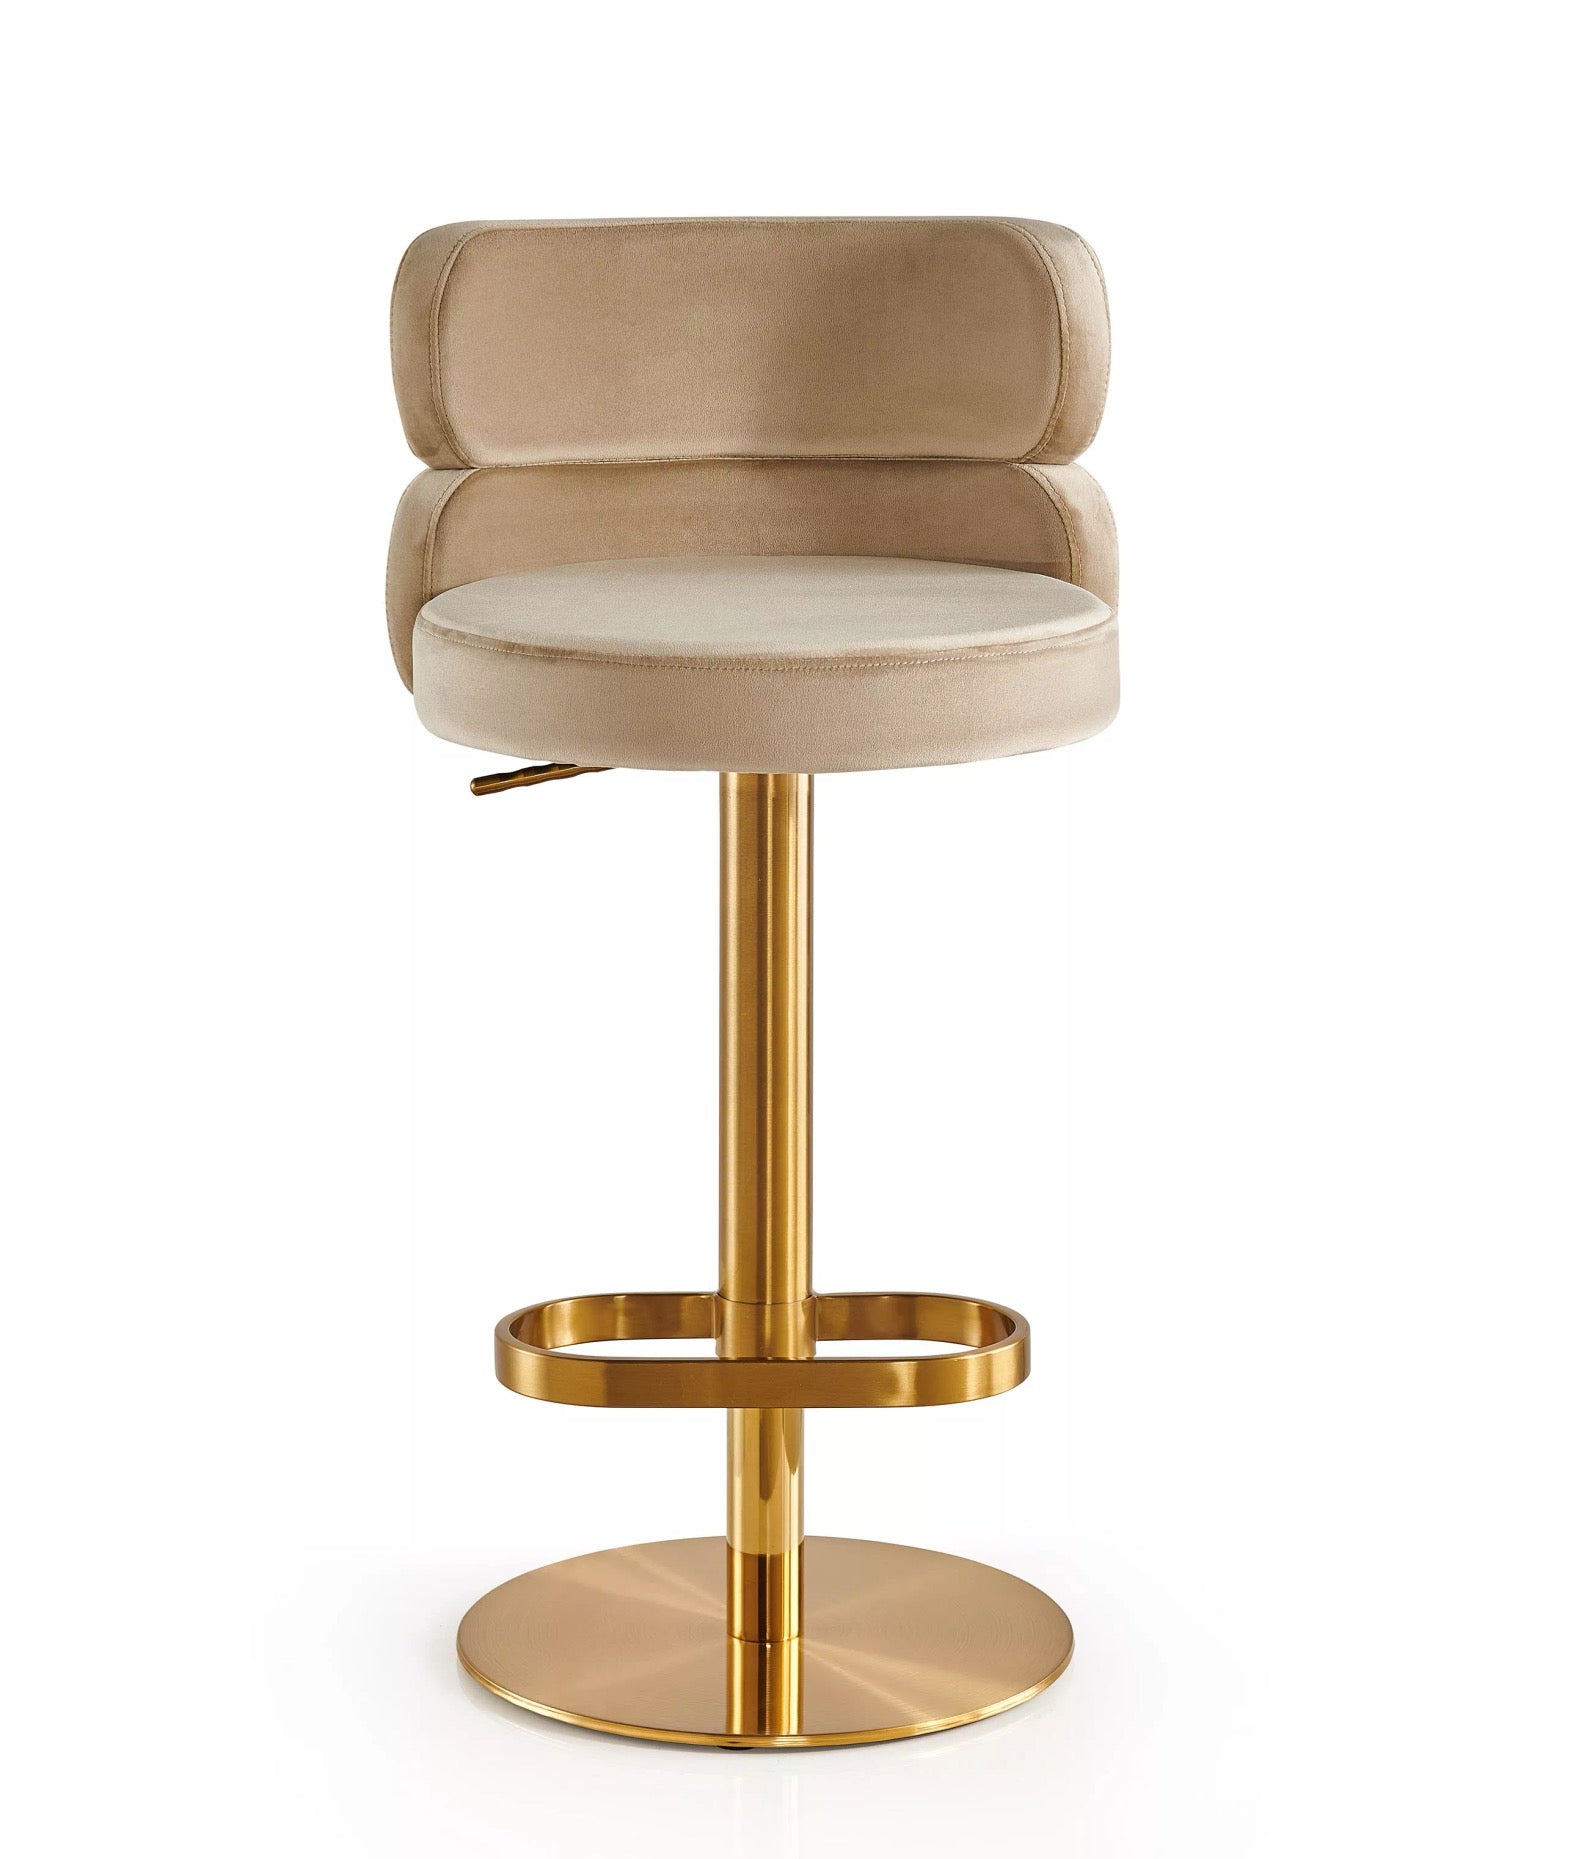 Stool Chair Velvet Gold Stainless Steel Swivel Adjustable Luxury Bar Chair